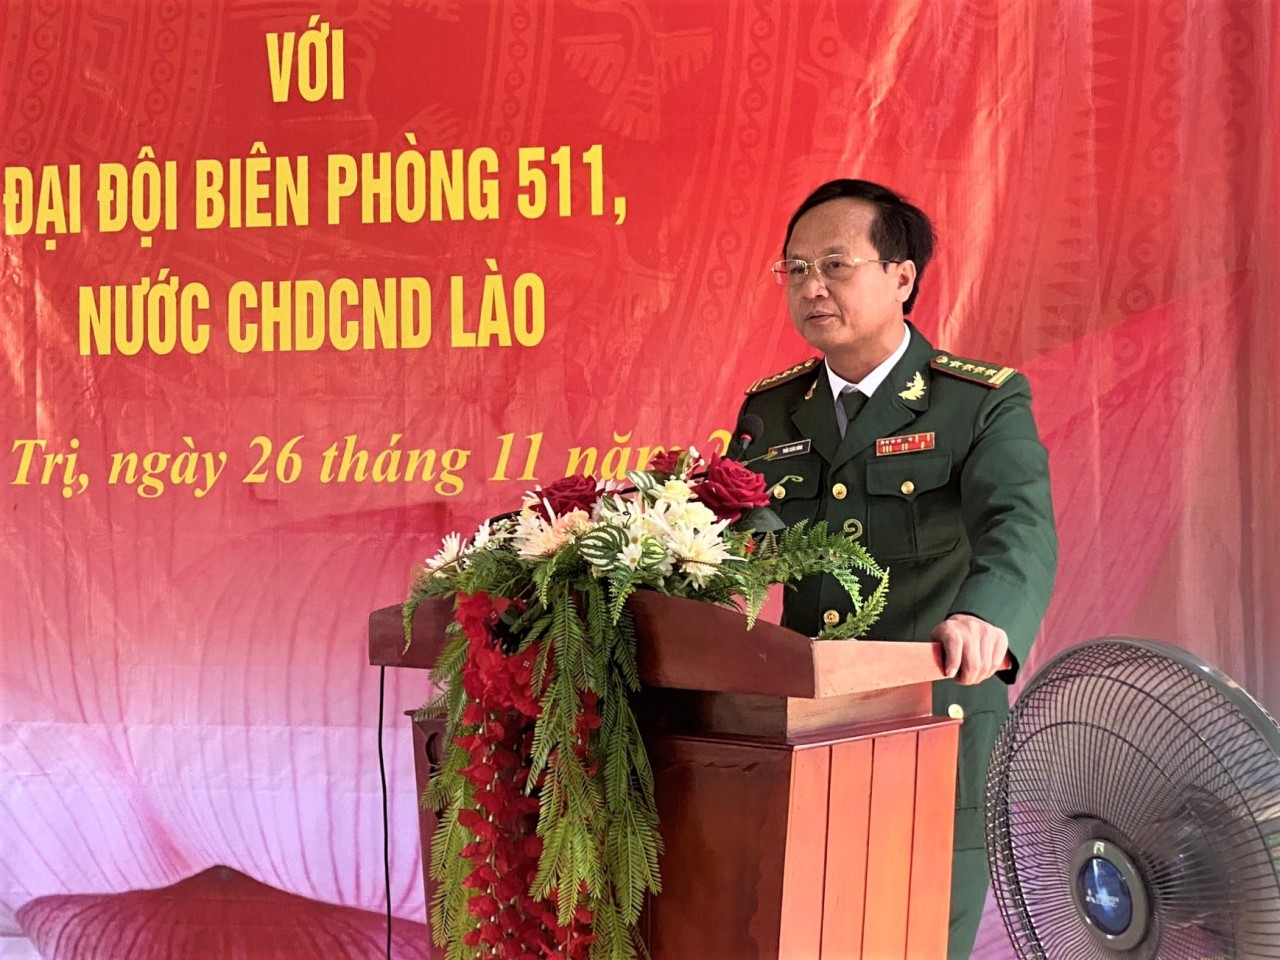 Quảng Trị: Các đồn biên phòng Việt Nam và Lào tổ chức lễ kết nghĩa